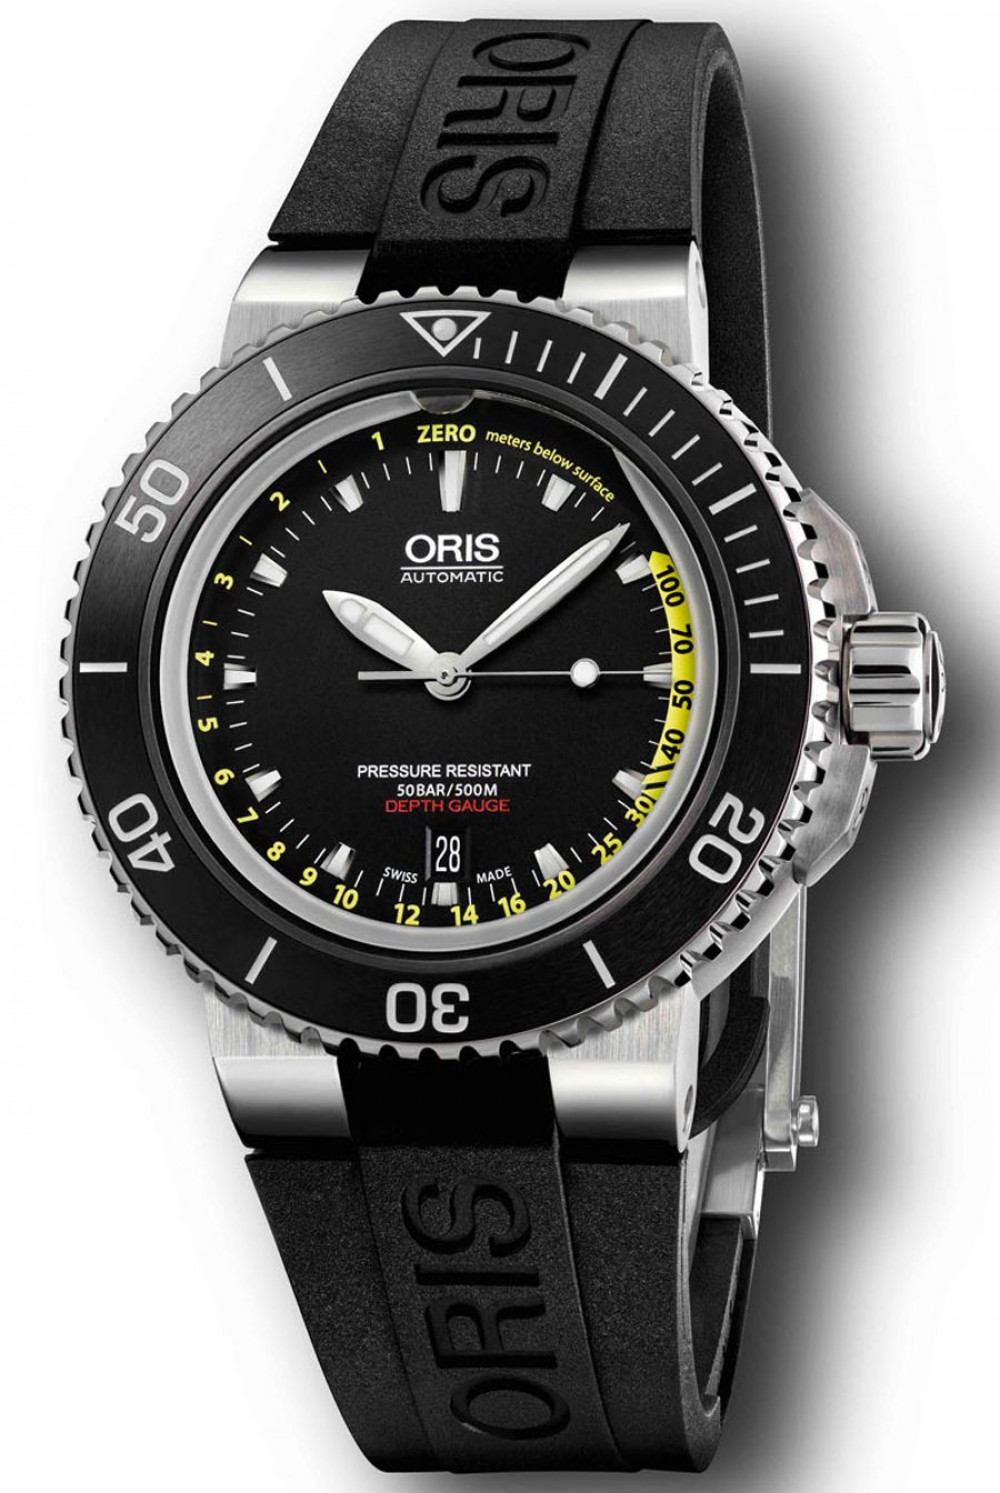 Zegarek firmy Oris, model Aquis Depth Gauge